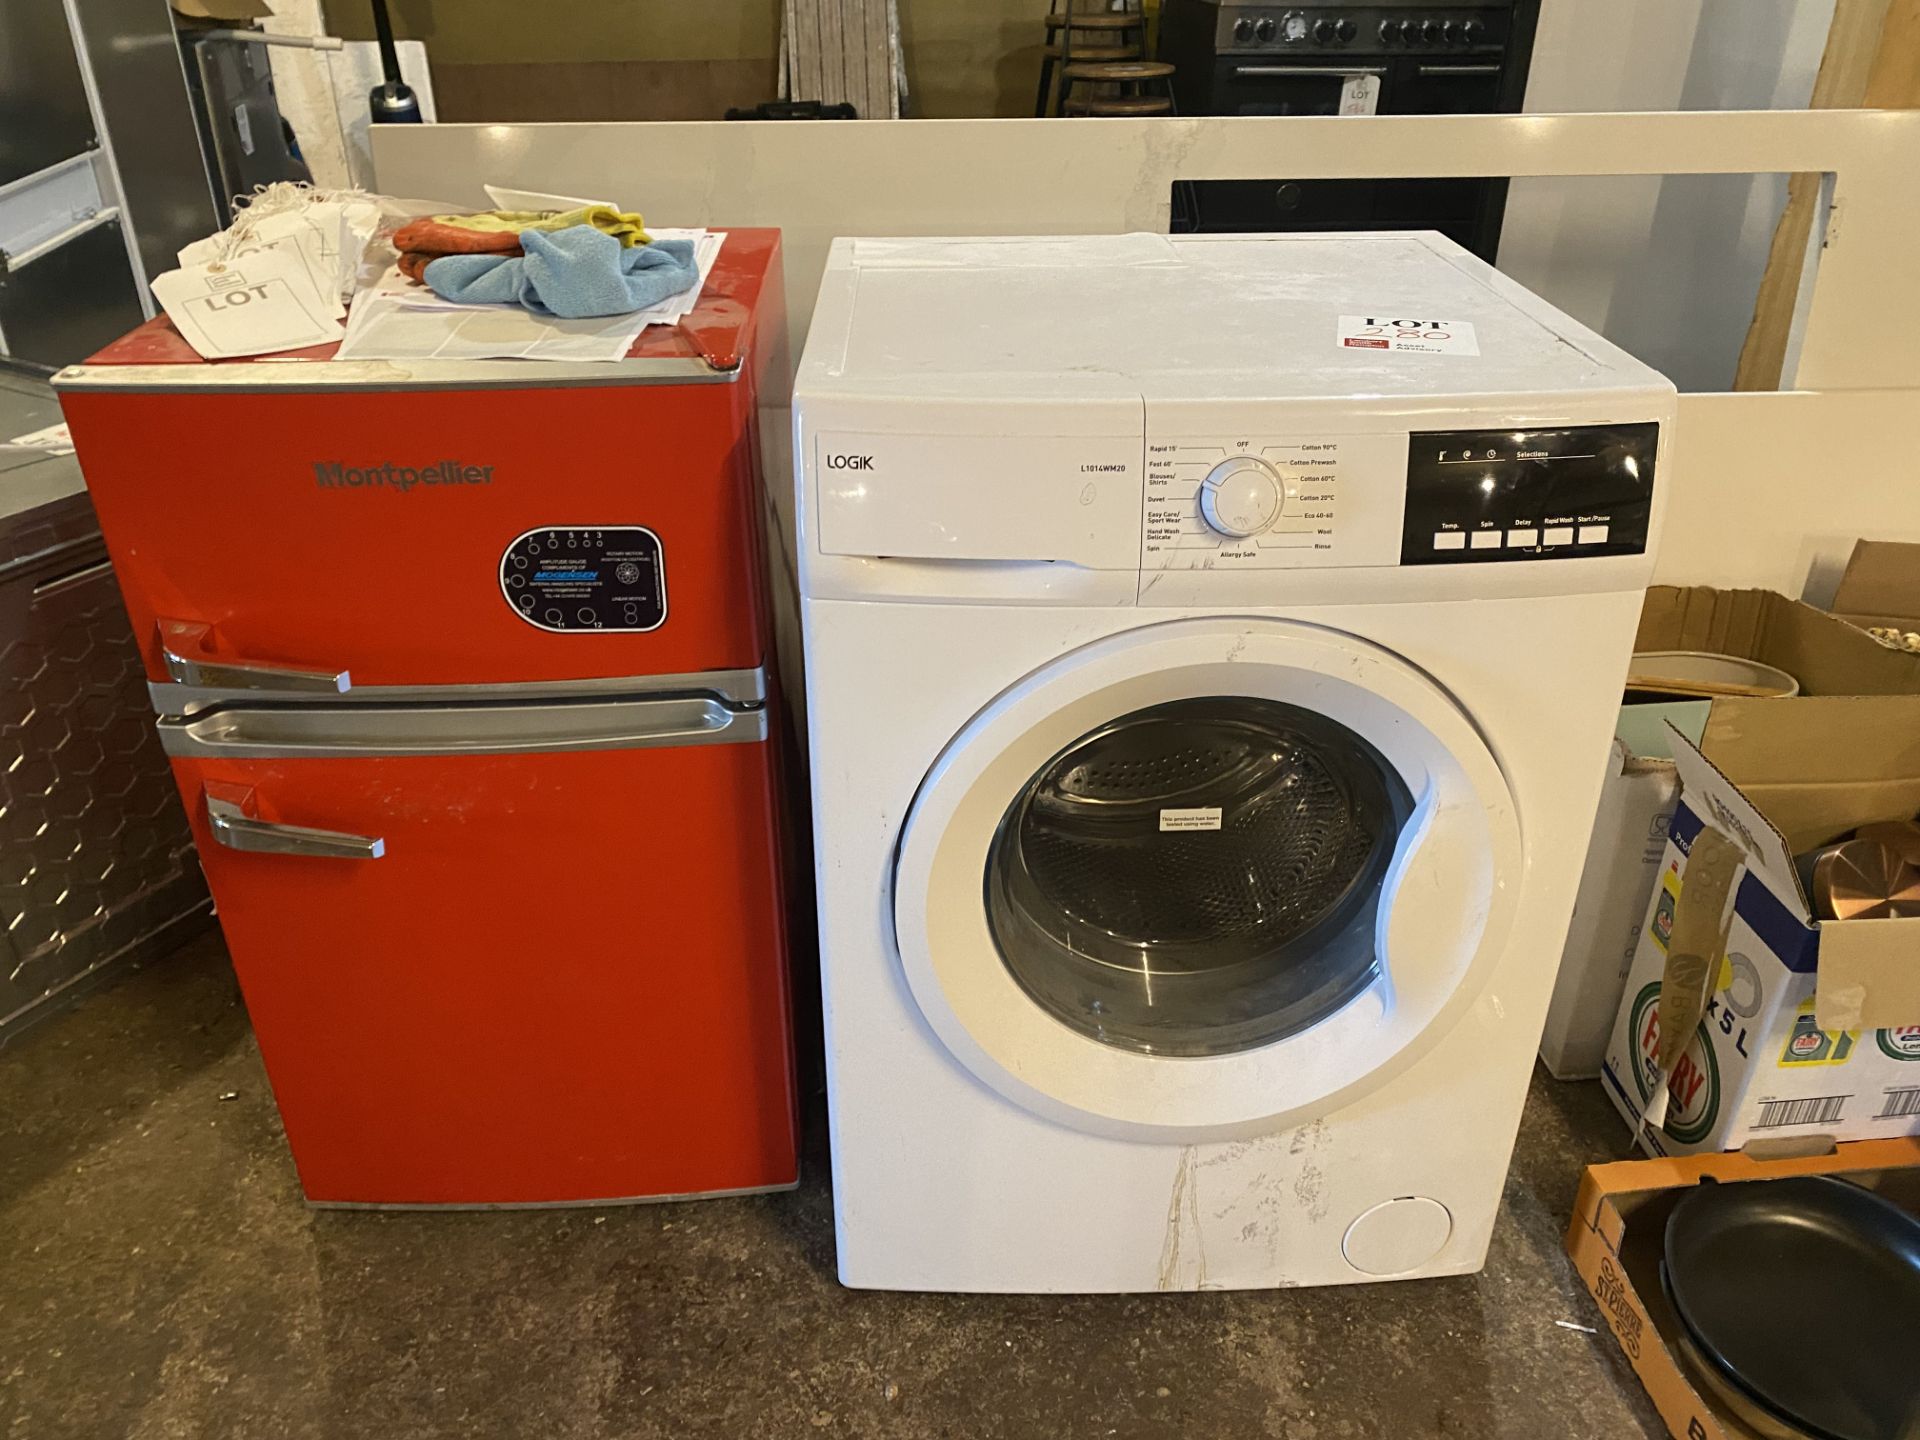 Logik L1014W20 washing machine and Montpellier fridge freezer